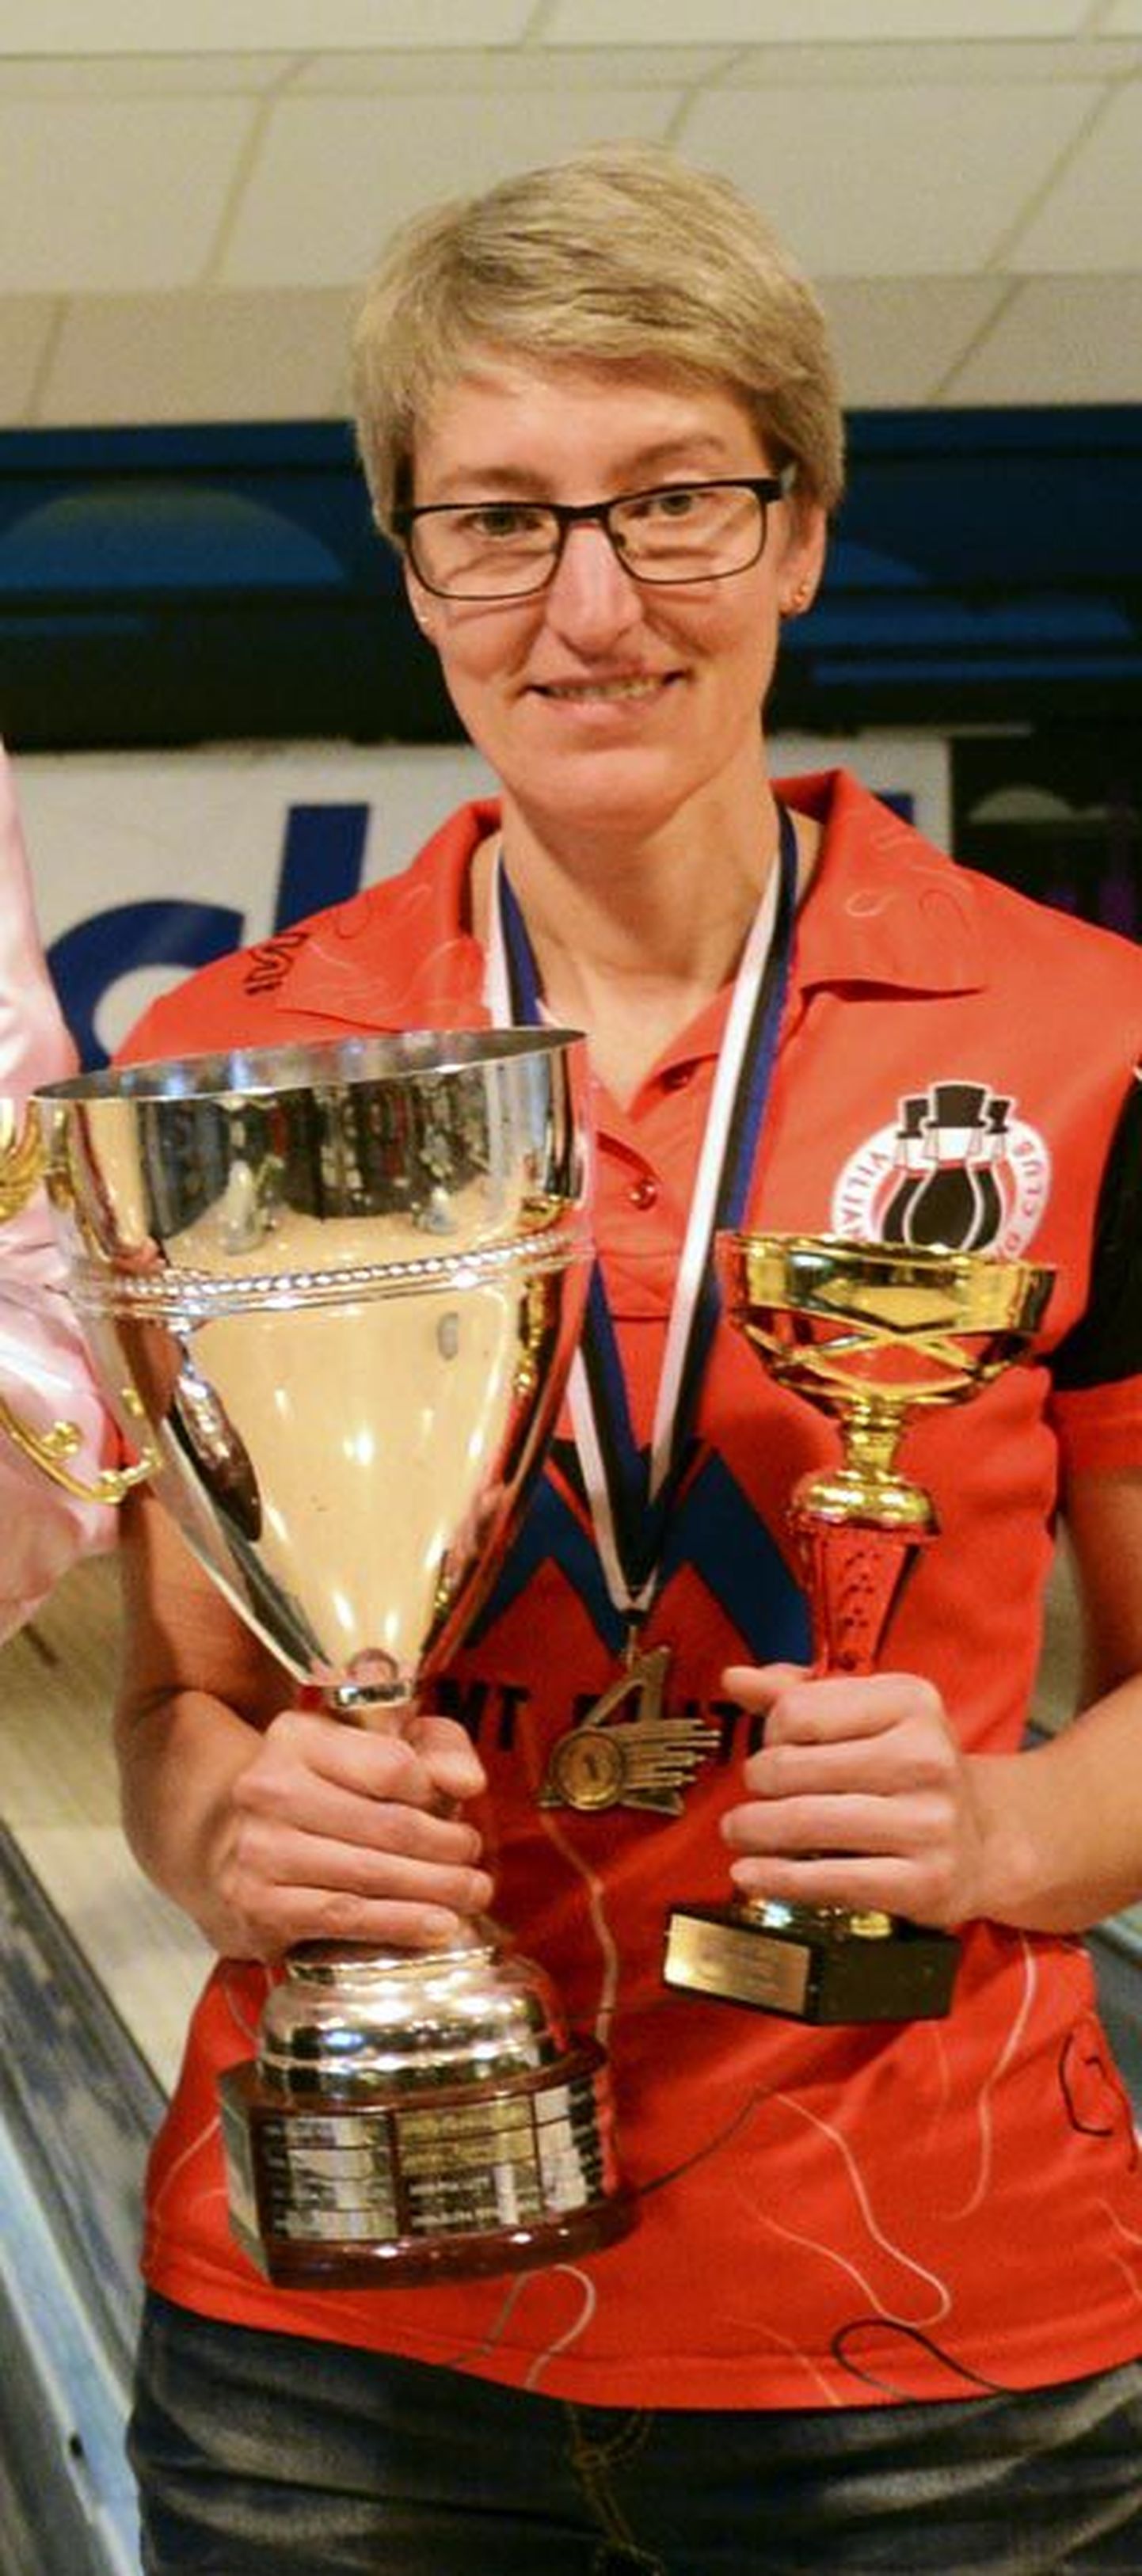 Terje Roosi eelmisel aastal teenitud Eesti meistri trofee jääb veel vähemalt aastaks tema kätte hoiule. Vaid viivuks rändab see töökotta, et sellele nagu kord ja kohus kaks tema nimega plaati panna.